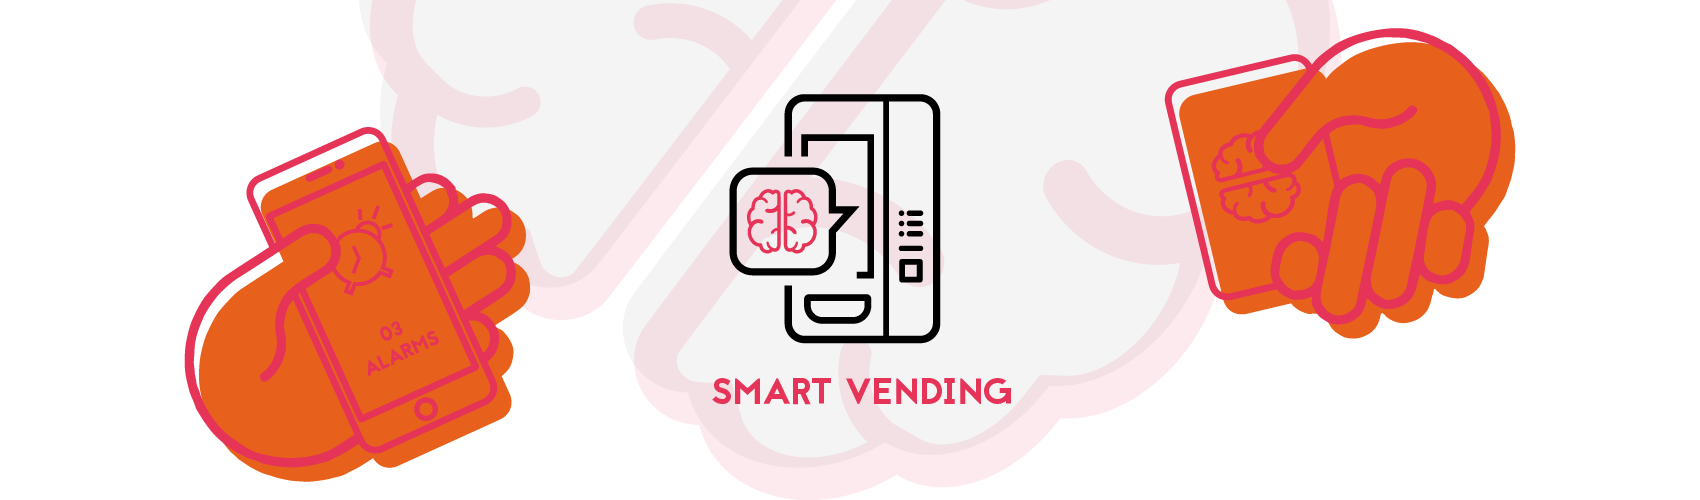 Smart Vending